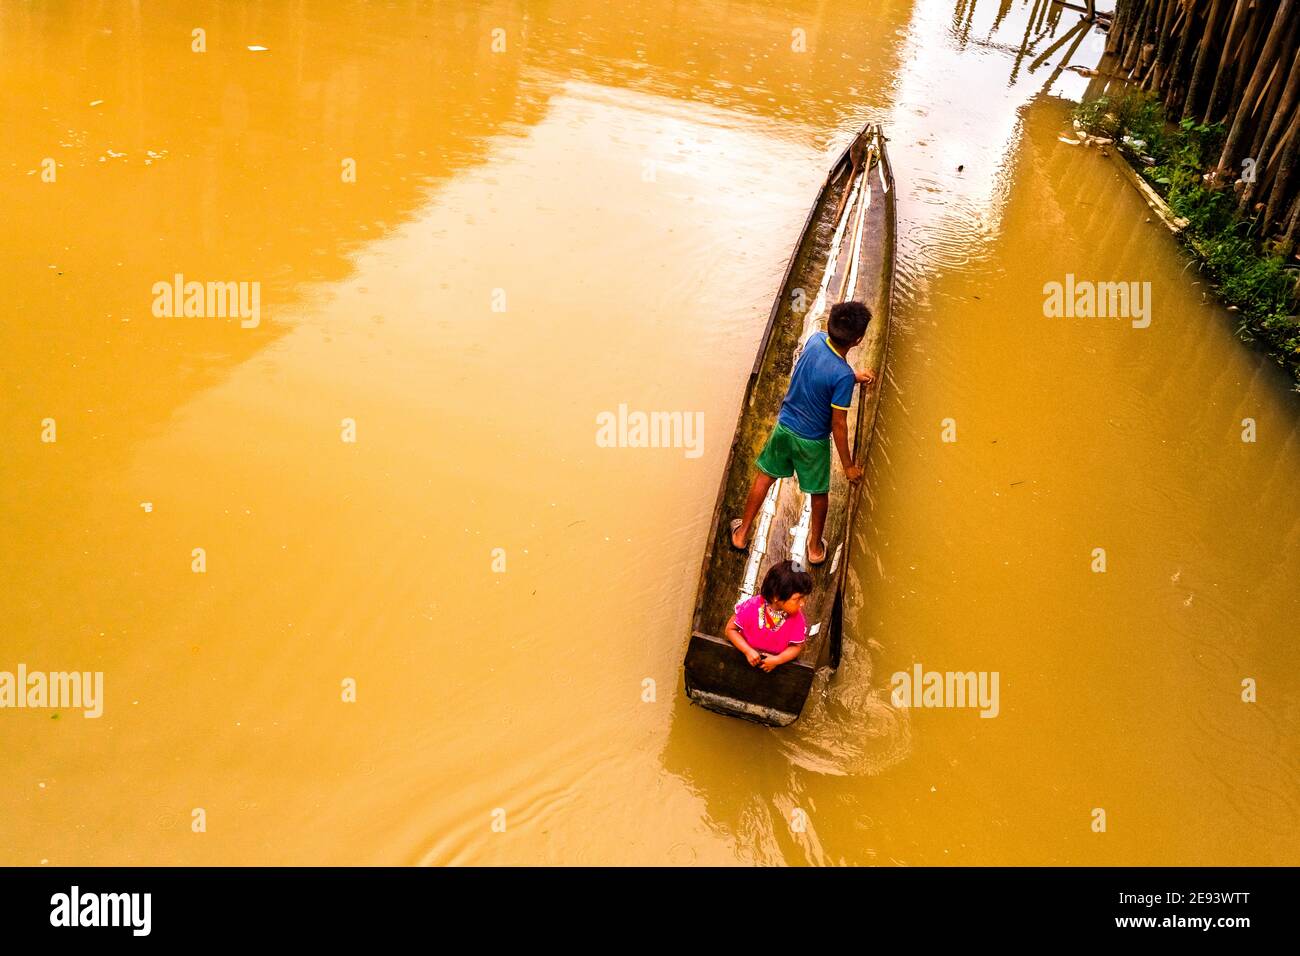 Die indigenen Kinder, die zum Stamm der Emberá-Wounaan gehören, fahren mit einem Kanu auf dem schlammigen Wasser des Flusses Atrato in Quibdó, Kolumbien. Stockfoto